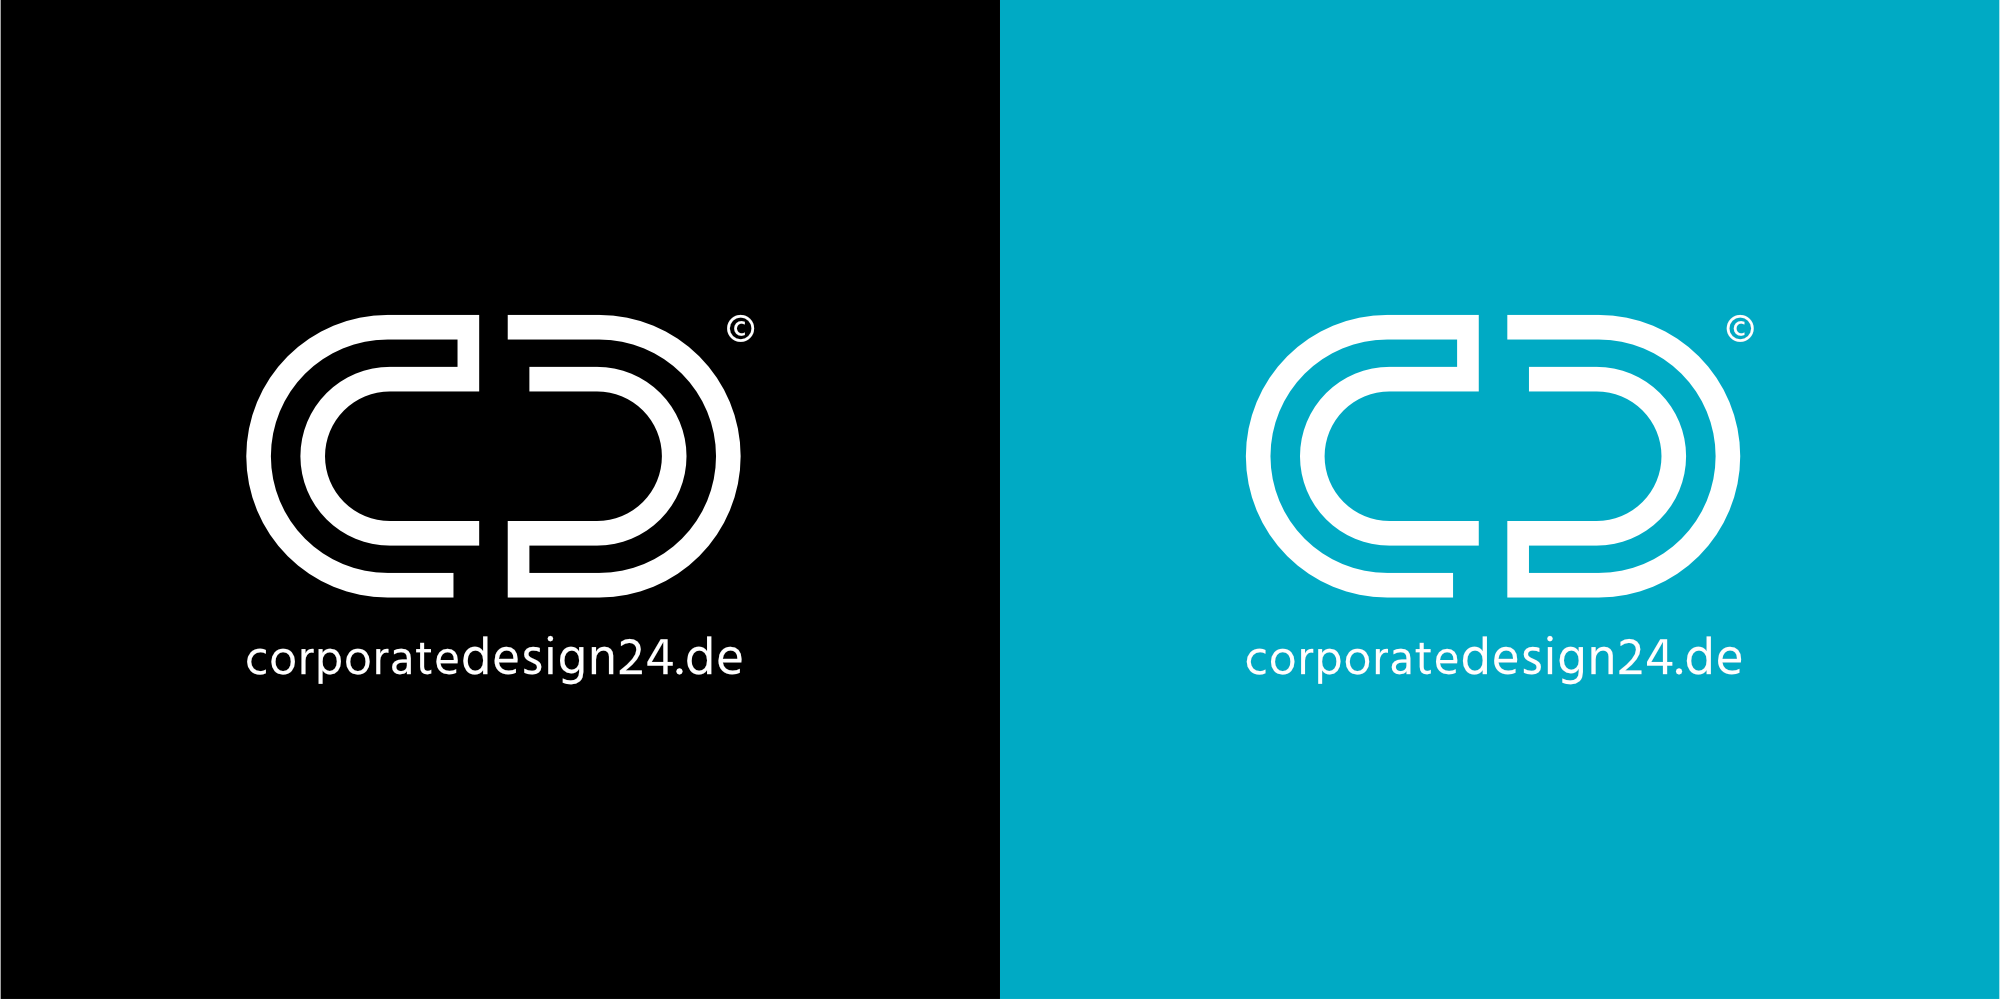 Logo Design von CorporateDesign24 auf schwarzem und blauem Hintergrund.